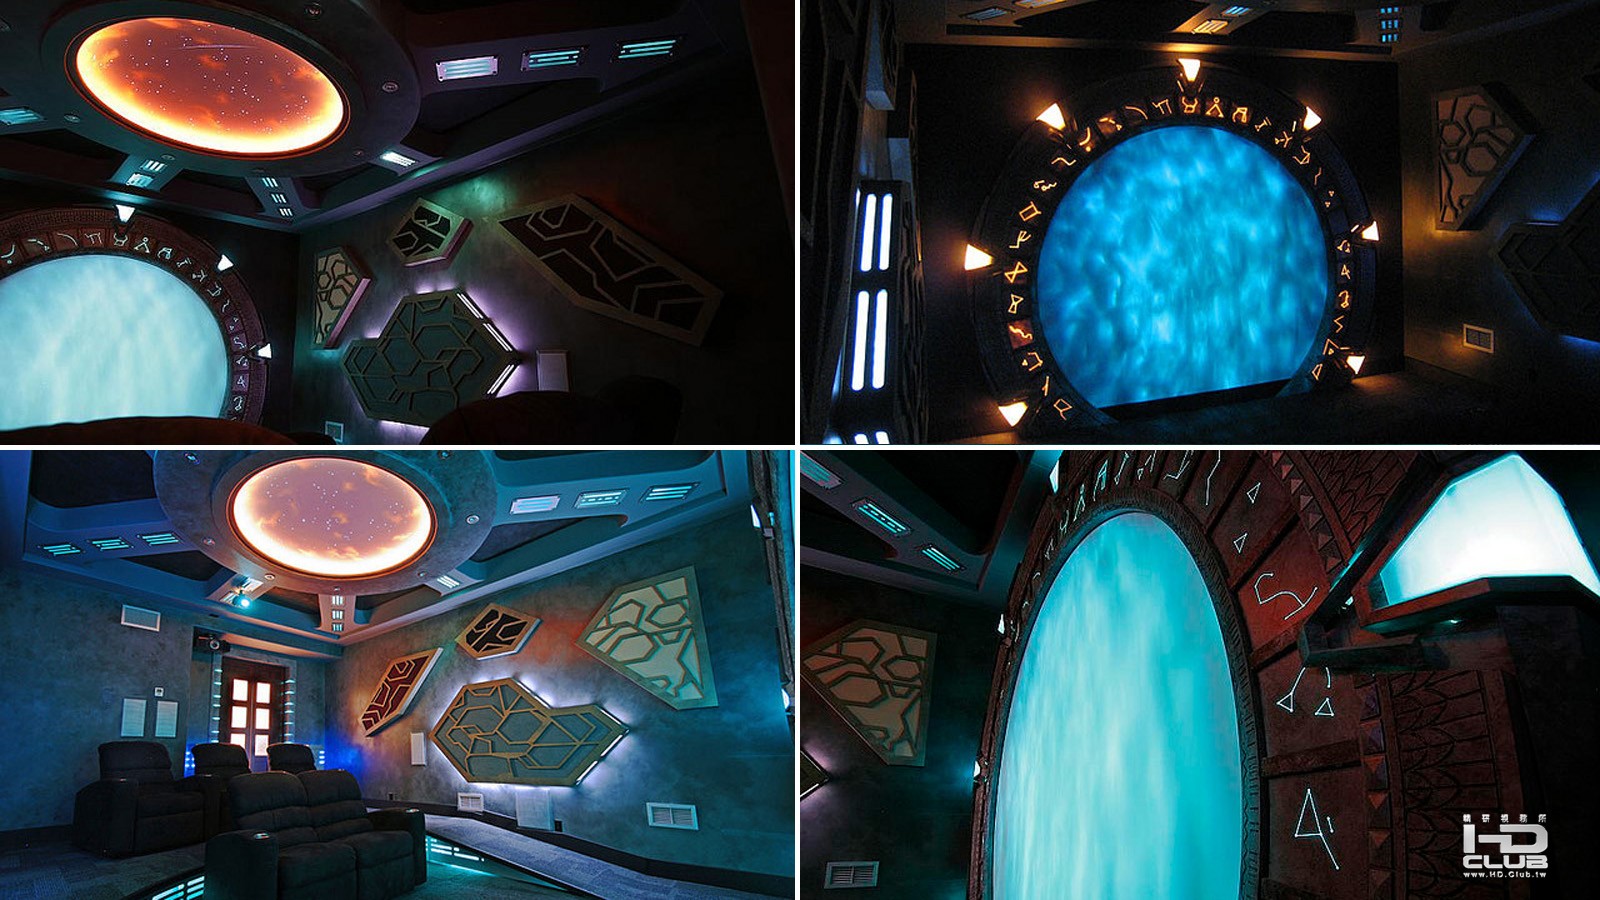 3_Stargate: Atlantis Home Theater